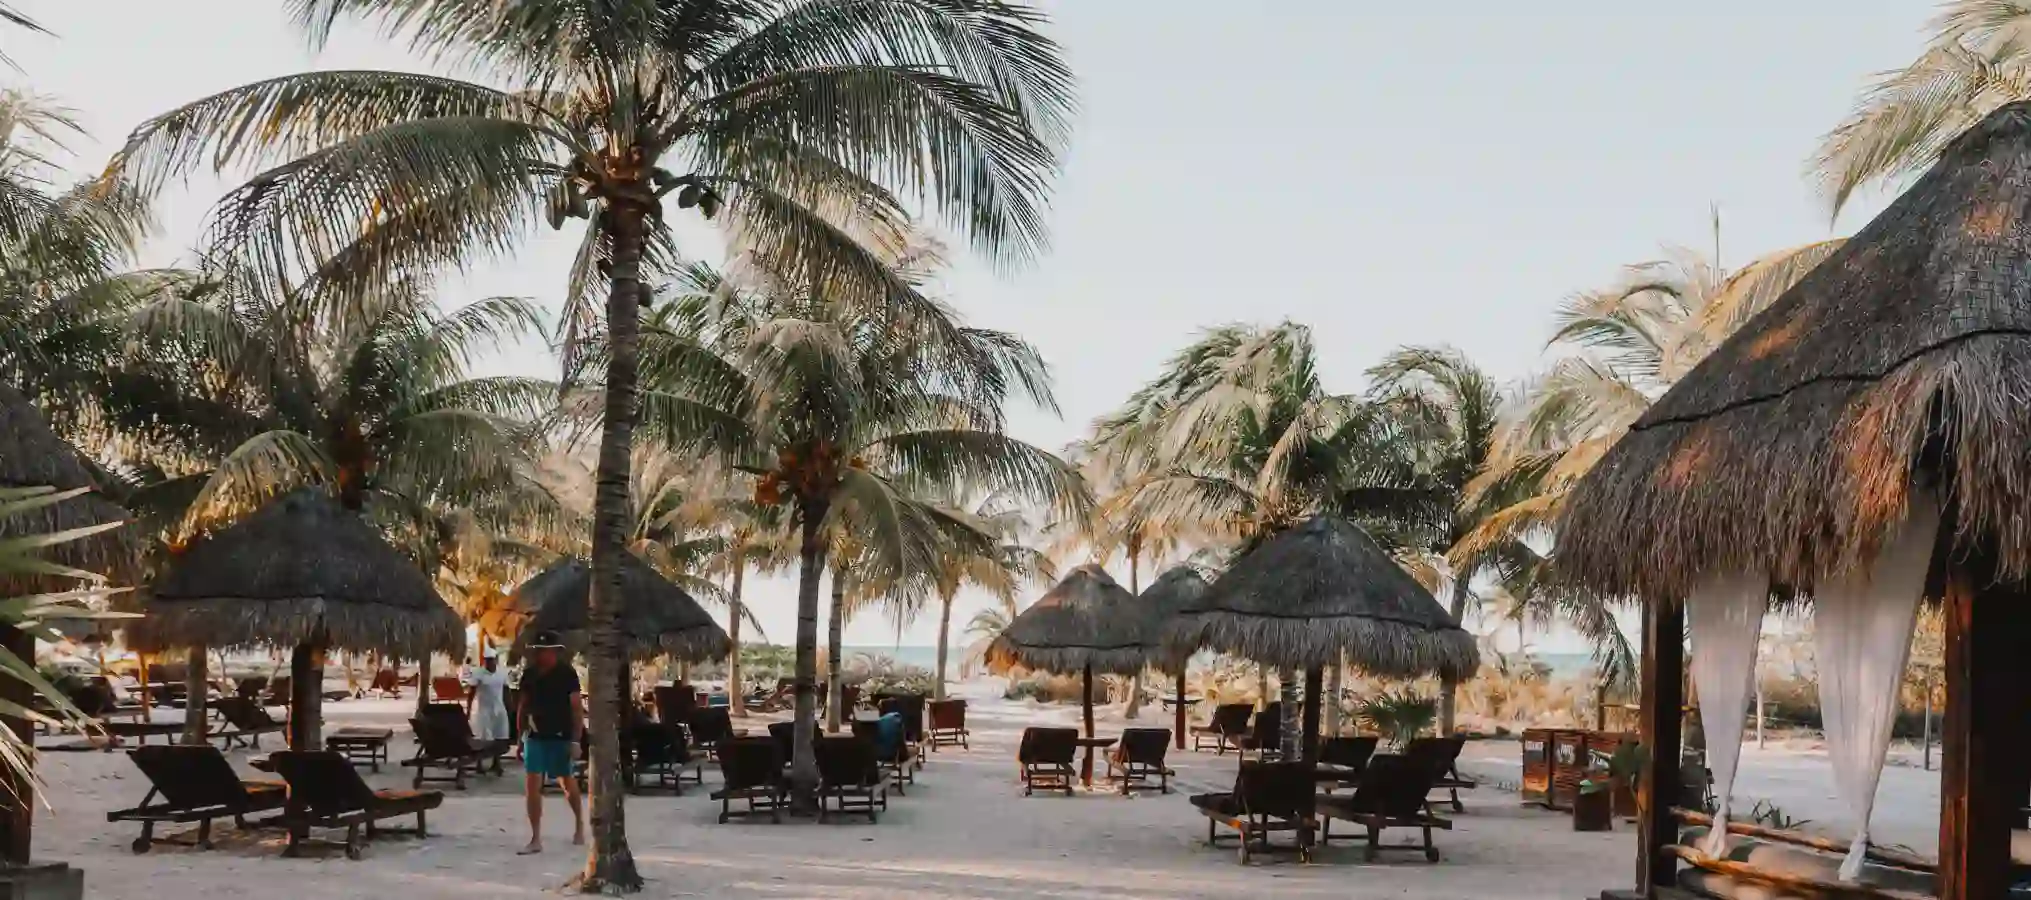 Spiaggia con palme e sedie